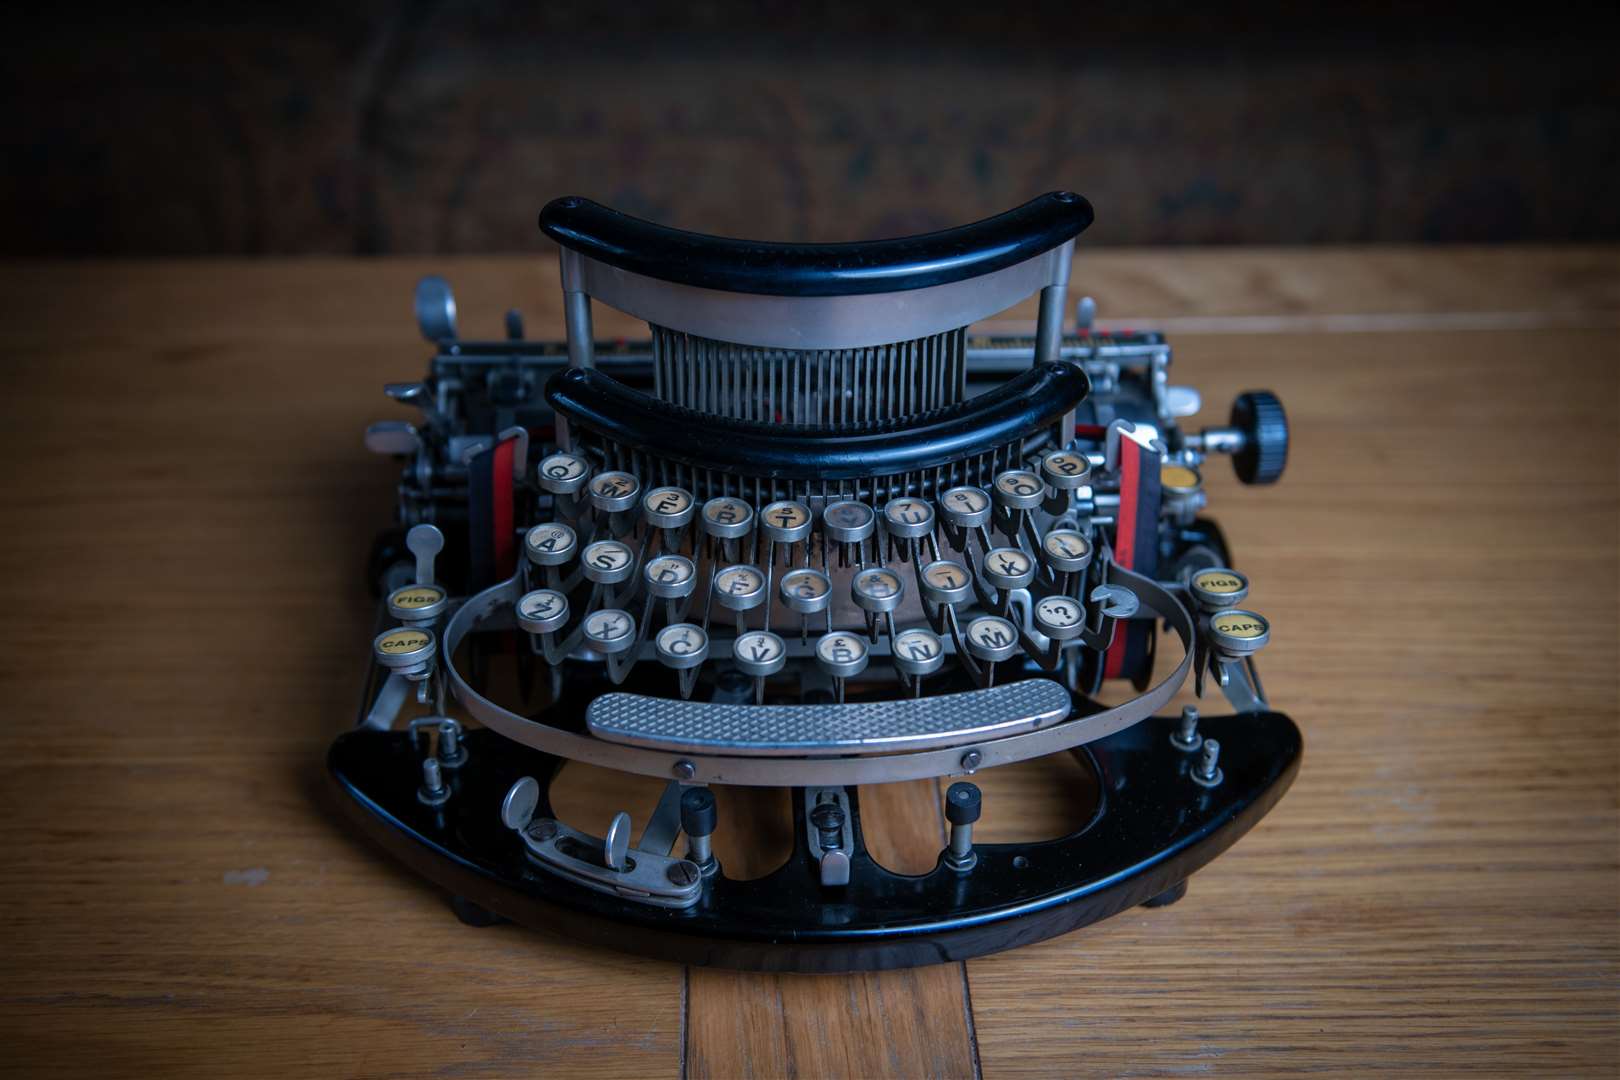 What story lies behind this typewriter?